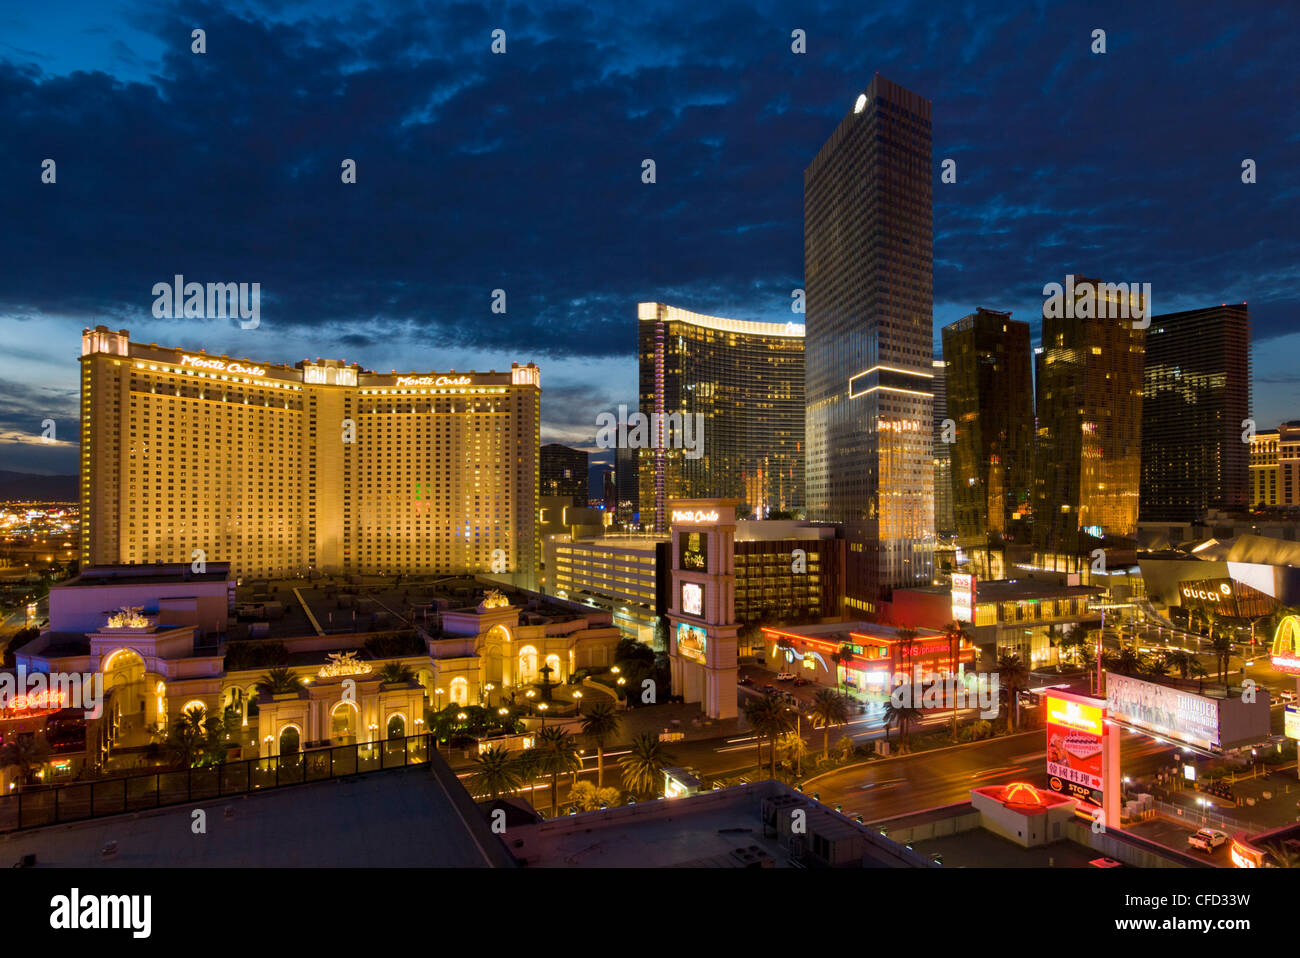 Night panorama of new hotels, Las Vegas Boulevard South, The Strip, Las Vegas, Nevada, USA Stock Photo